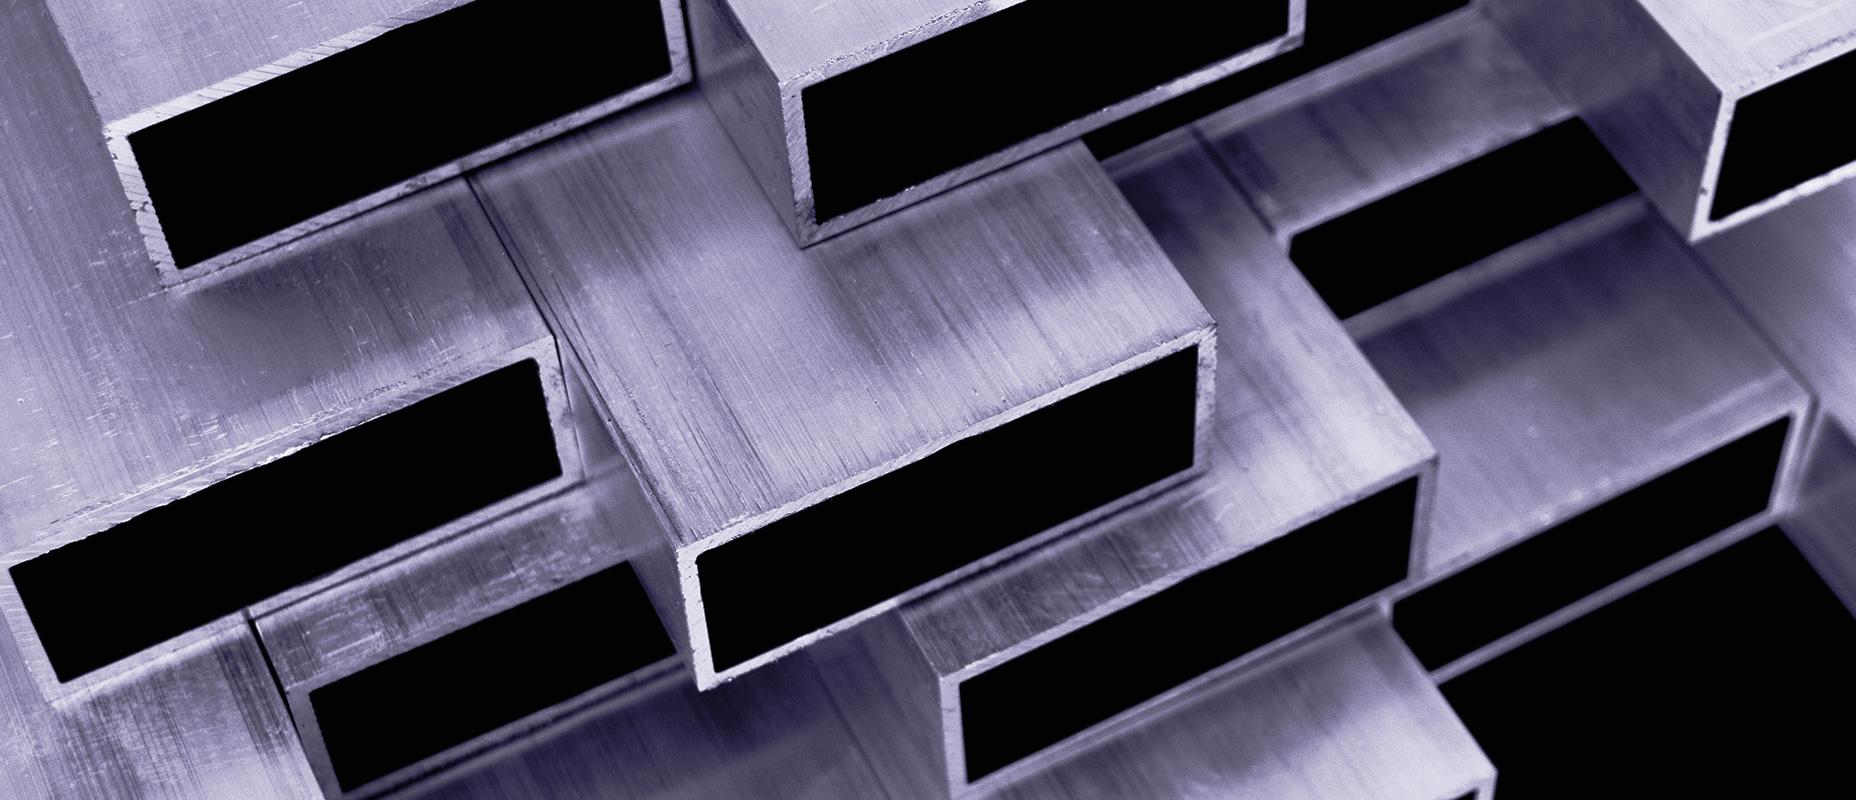 Які компанії можуть збільшити постачання алюмінію до ЄС на тлі скорочення виробництва